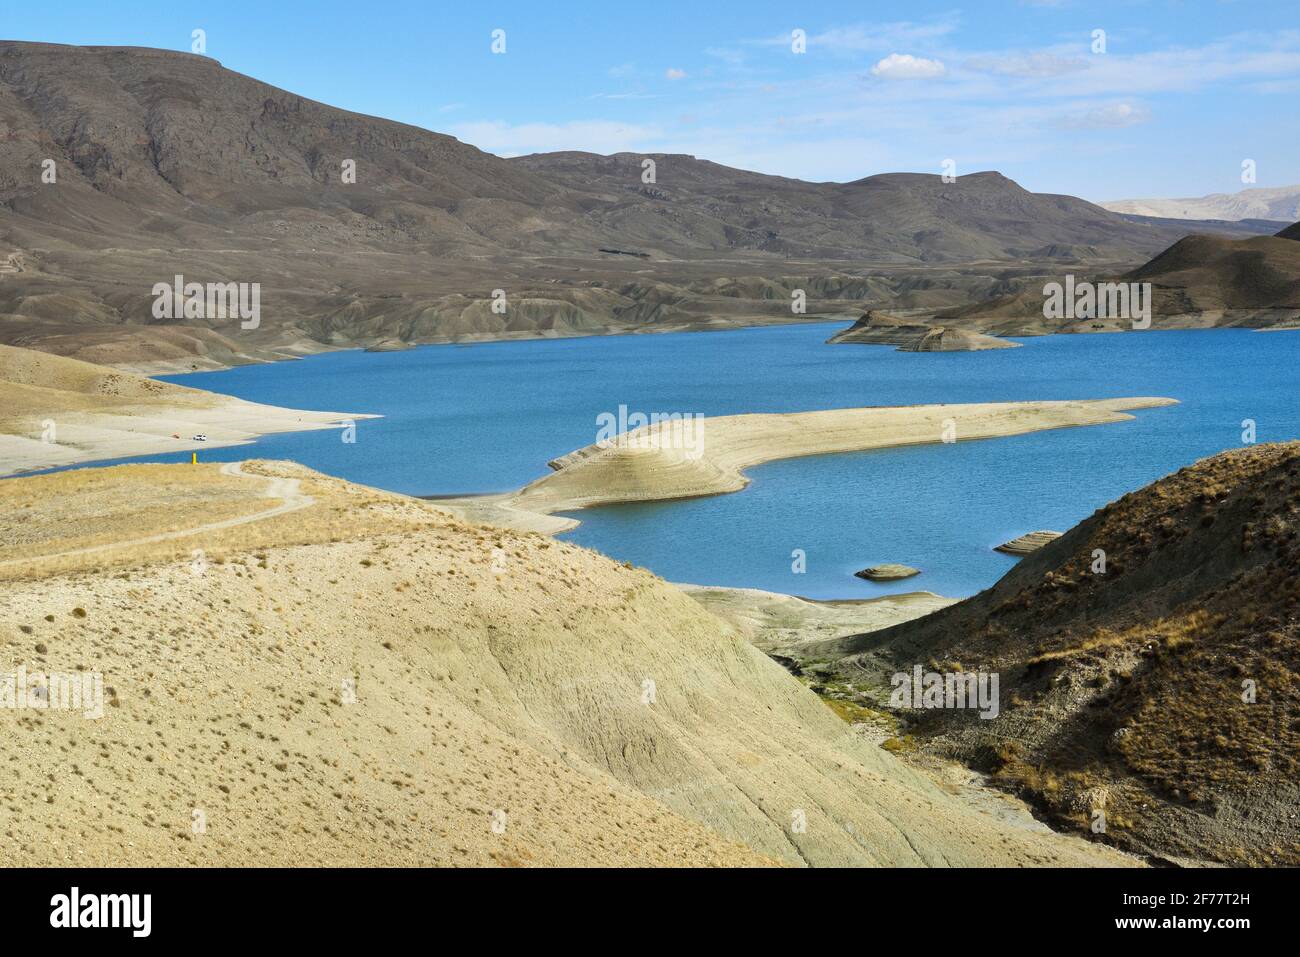 Iran, provincia dell'Azerbaigian occidentale, regione di Maku, lago di Baron Foto Stock